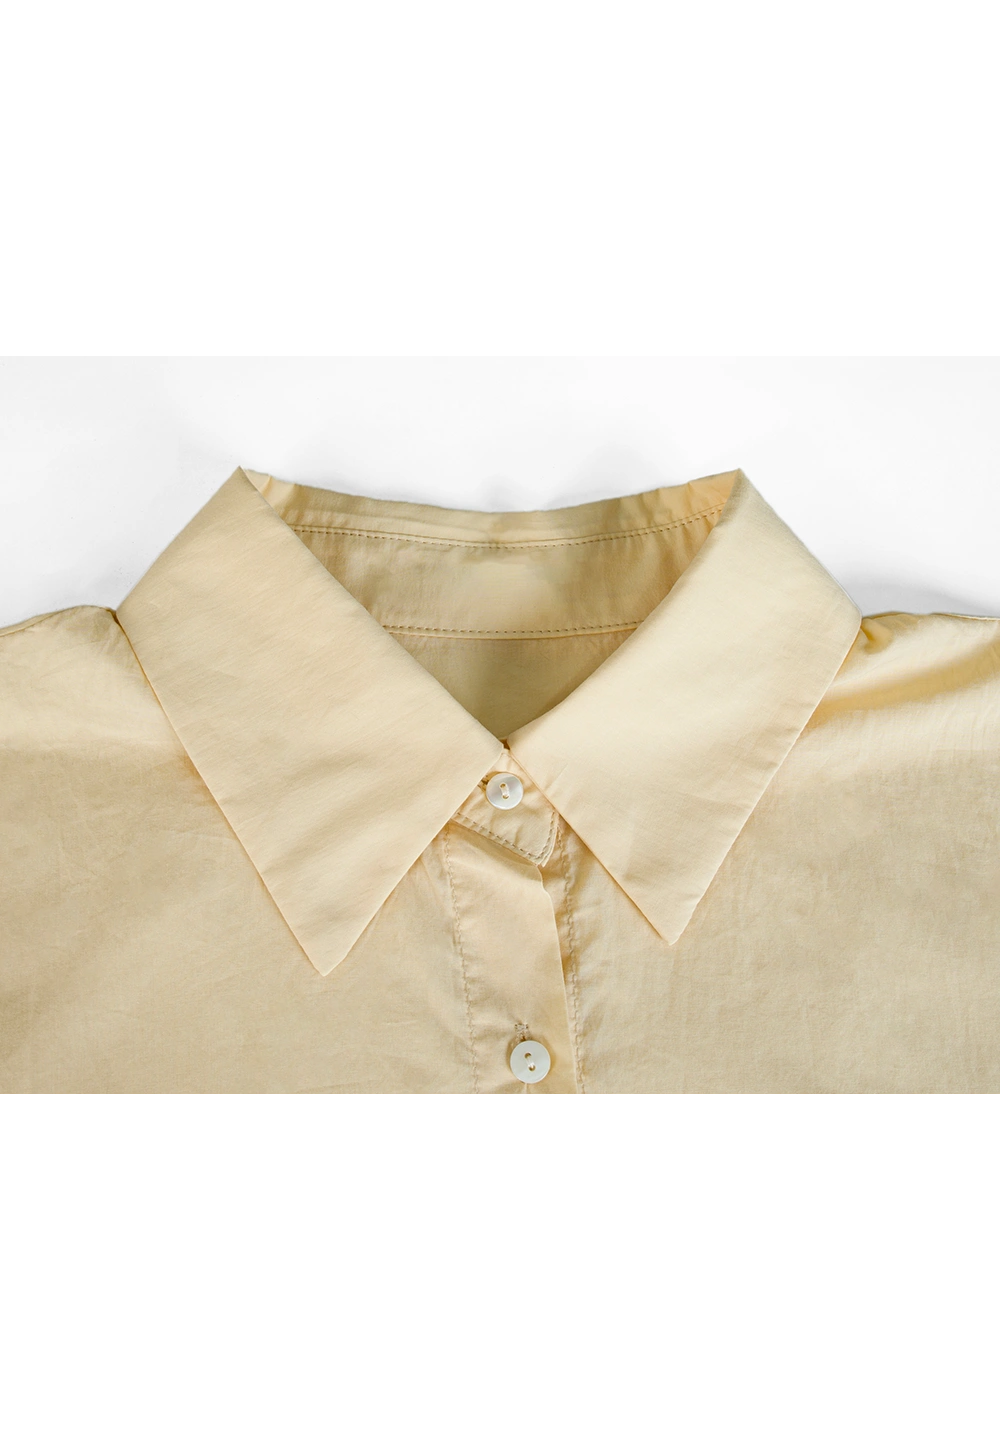 자수 로고가 있는 더스티 로즈 소재의 여성용 반팔 코튼 버튼다운 셔츠 